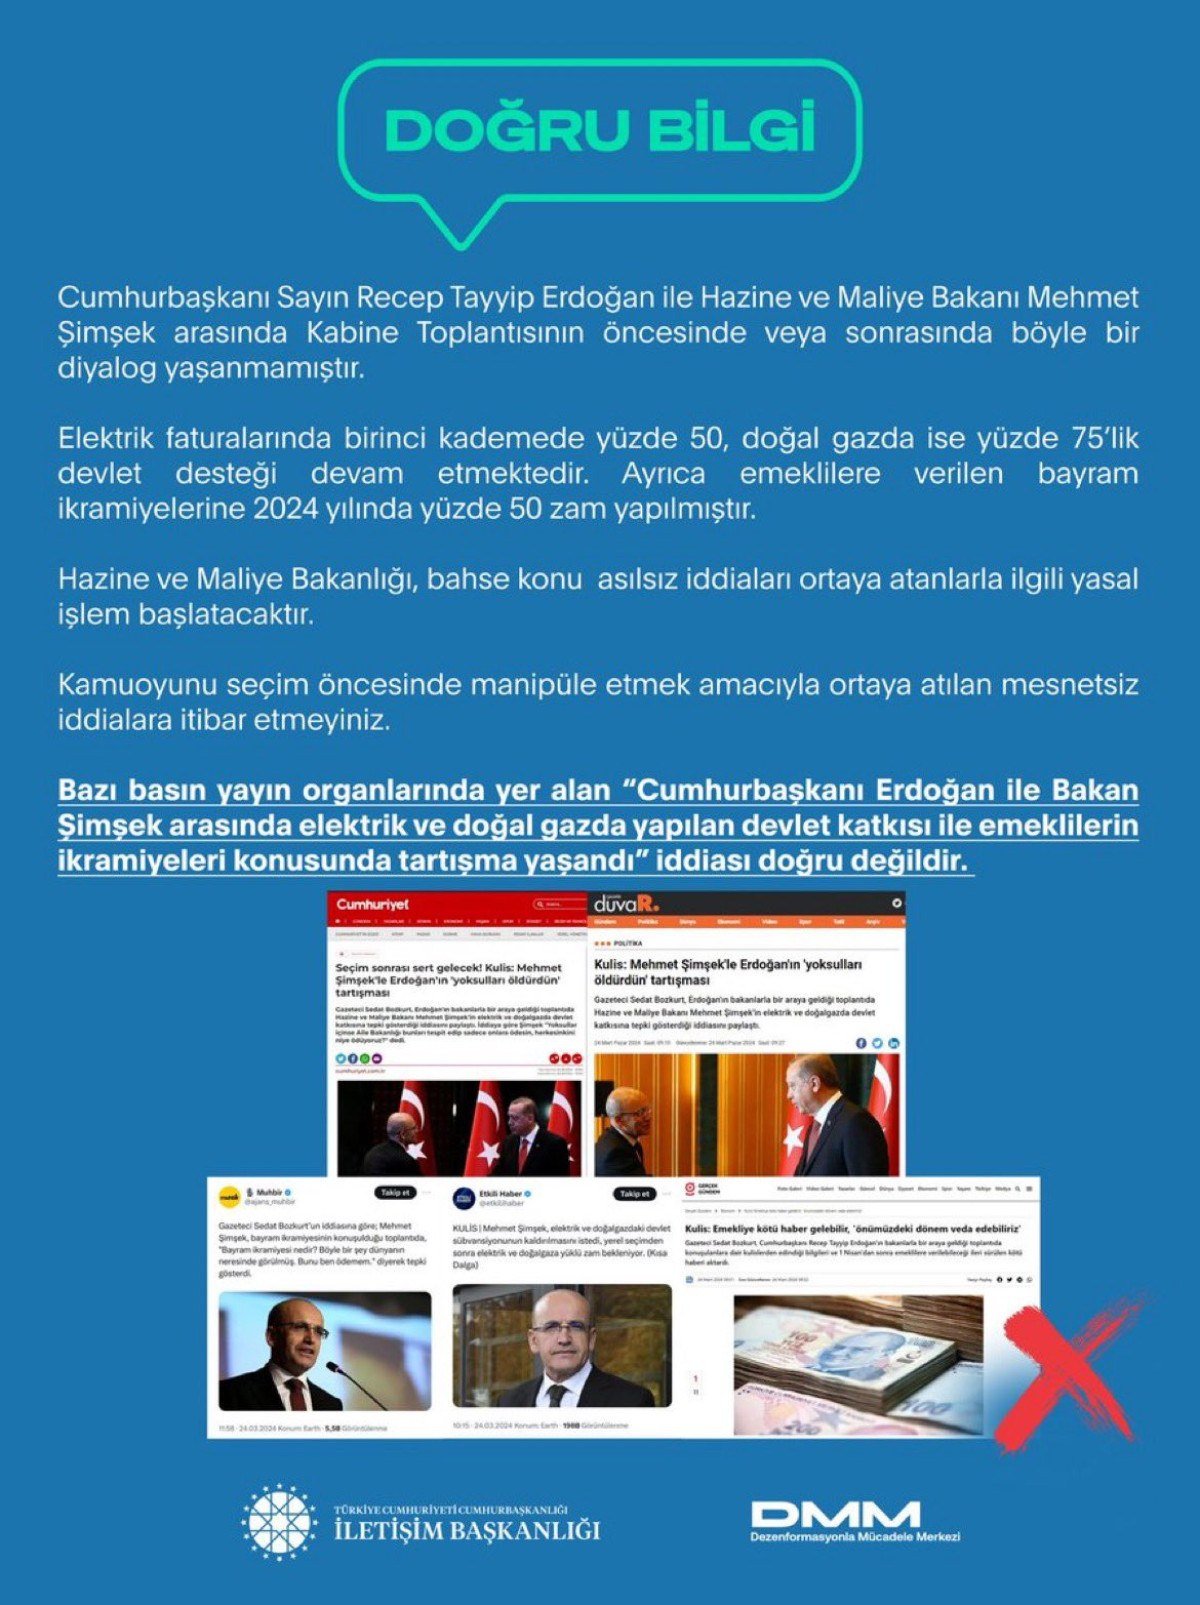 1711286360 420 Cumhurbaskani Erdogan ile Bakan Simsek arasinda tartisma yasandigi iddialari yalanlandi